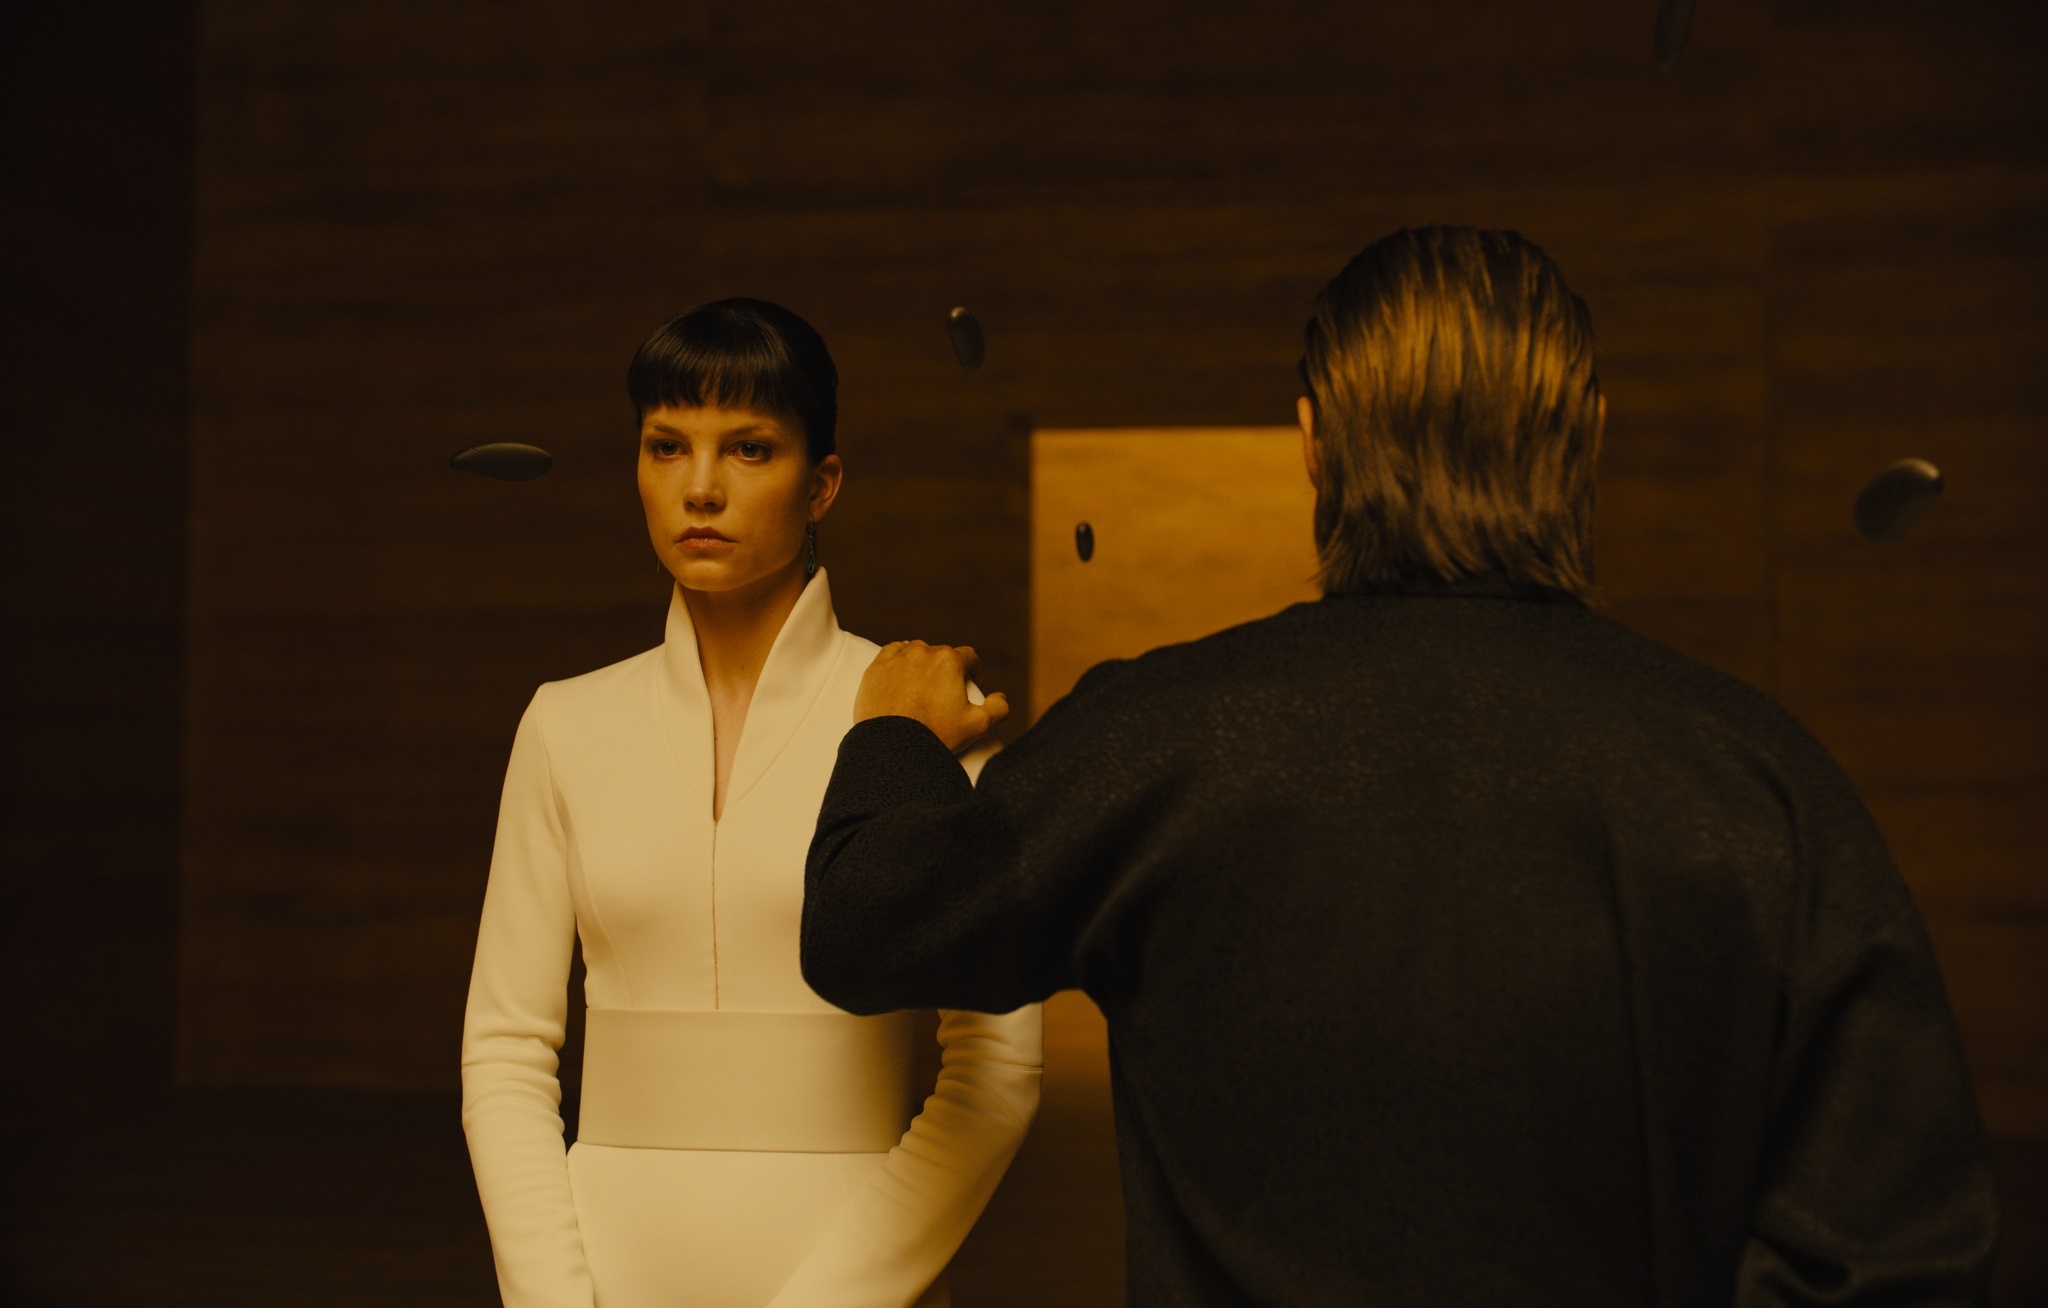 Blade Runner 2049 Sylvia Hoeks wallpaper, High resolution, ID 1030723, 2050x1310 HD Desktop